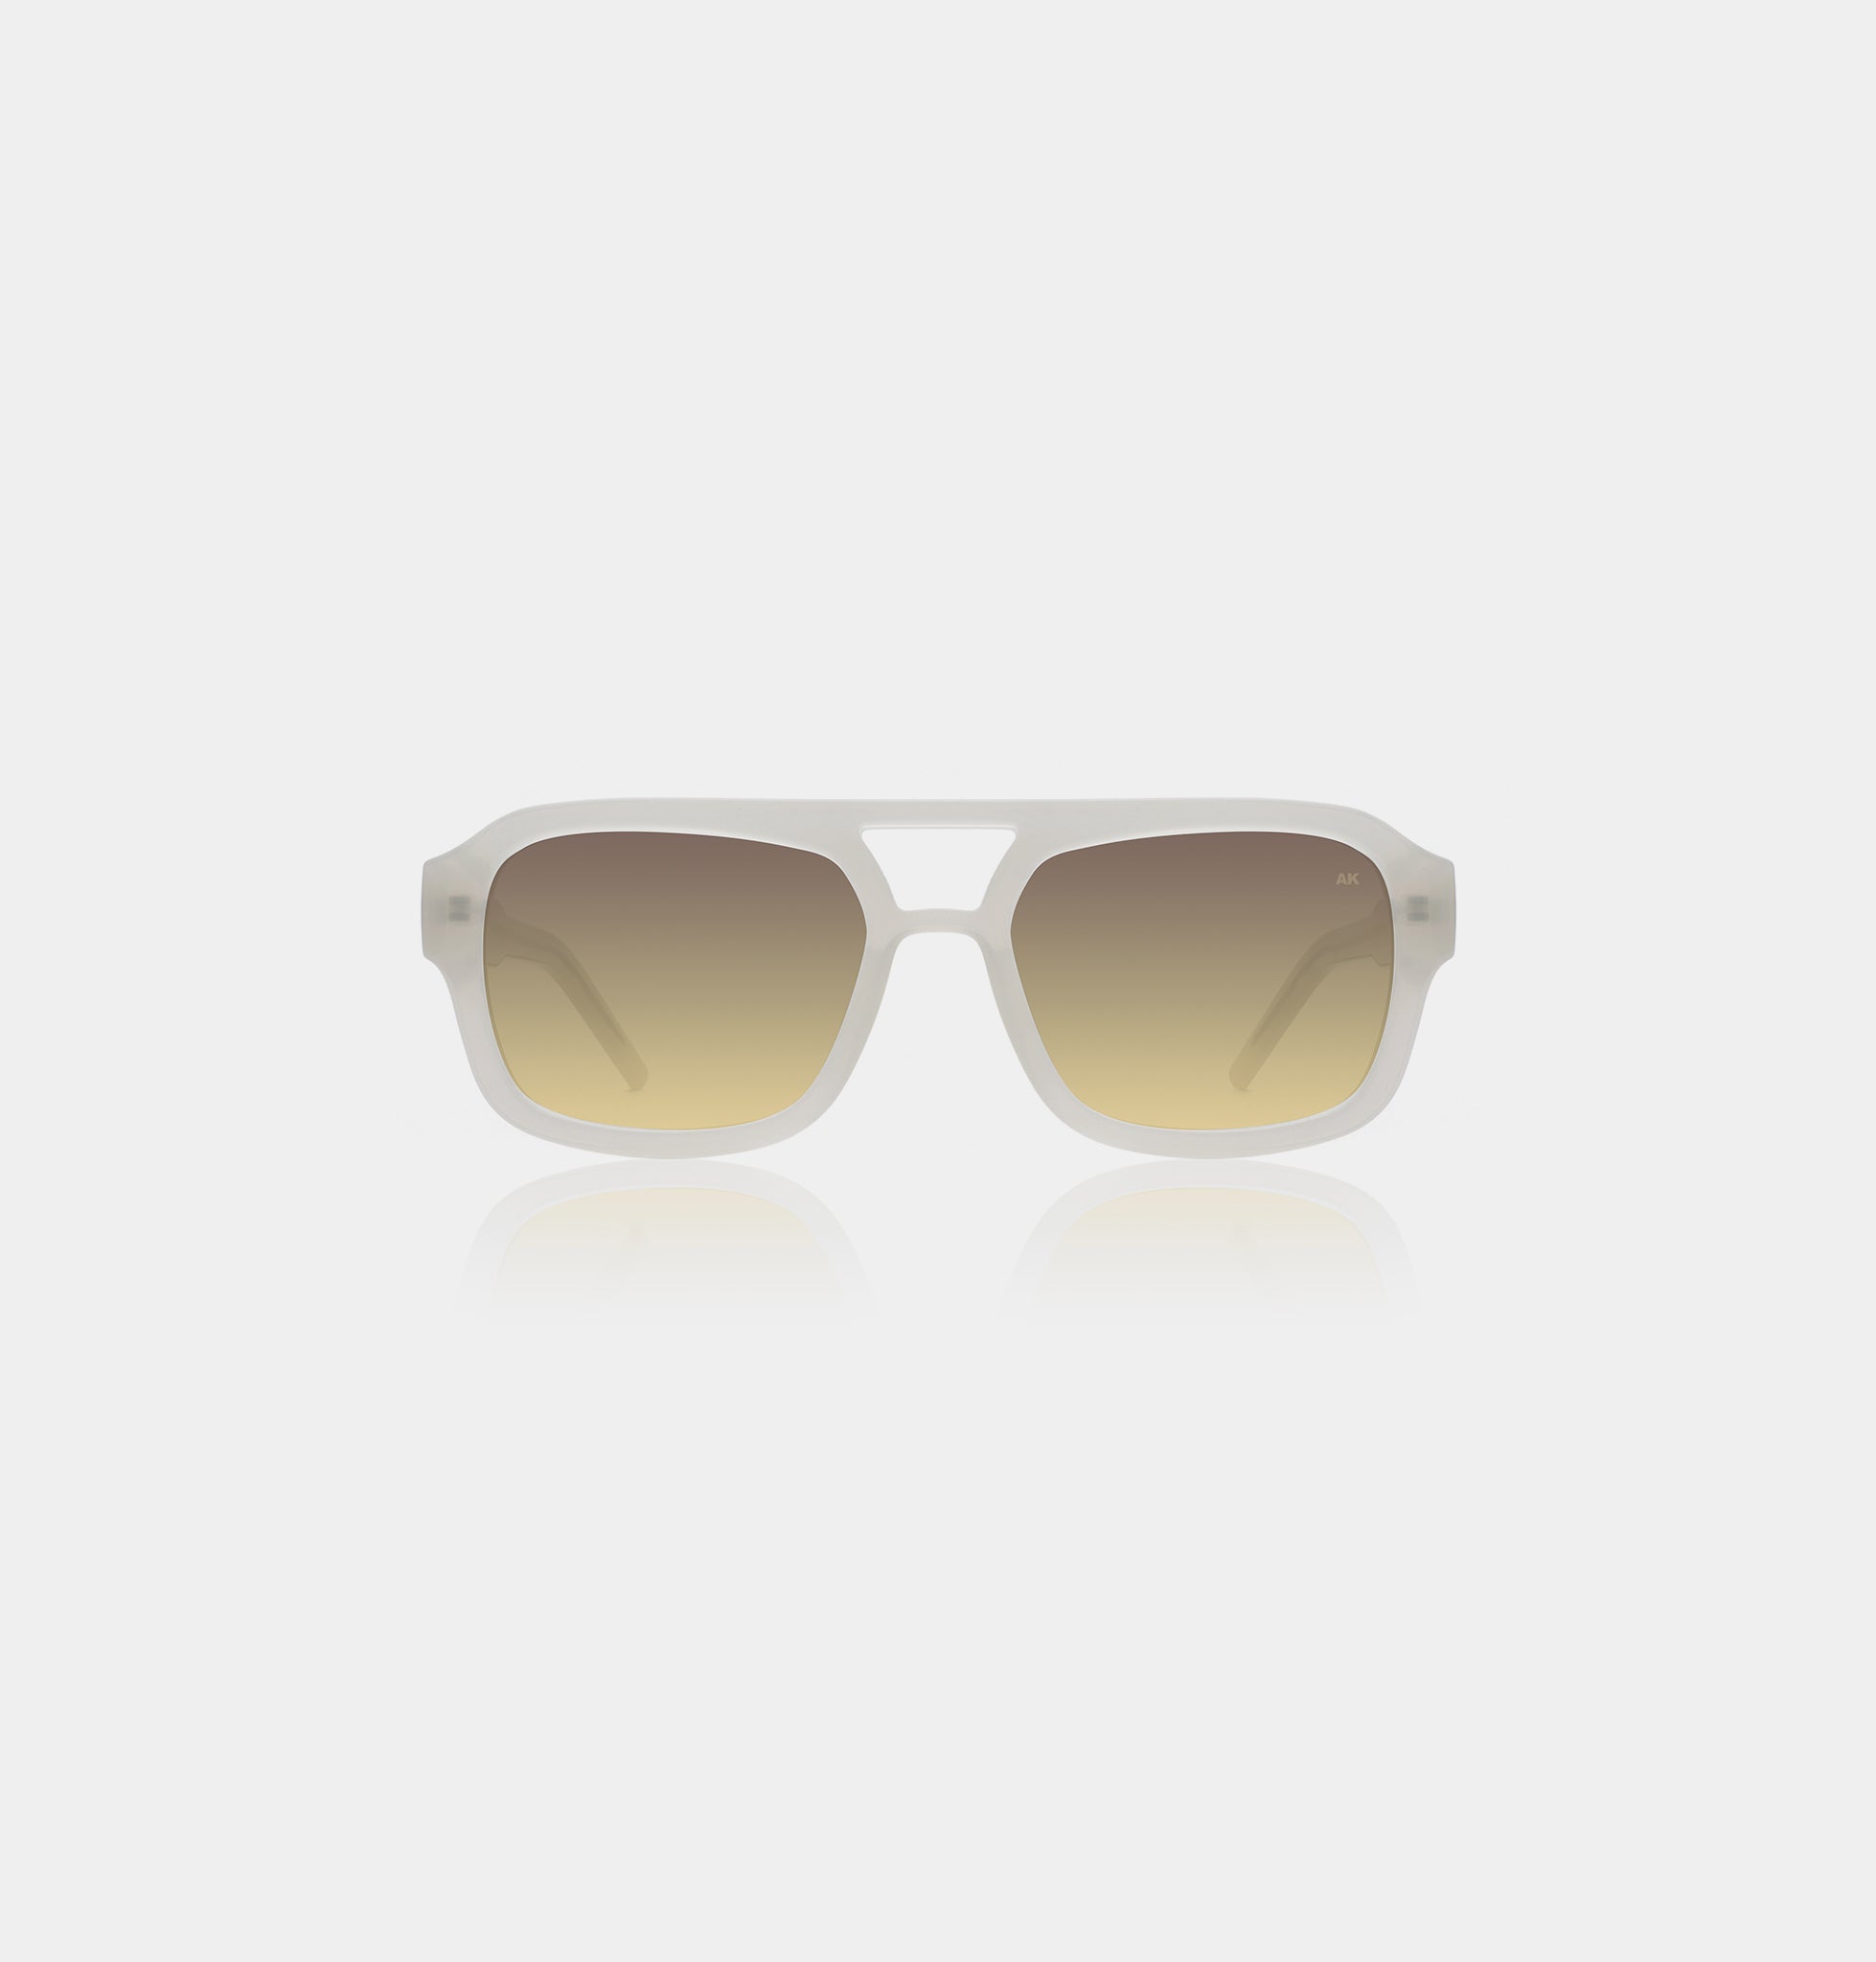 Kaya sunglasses in cream bone